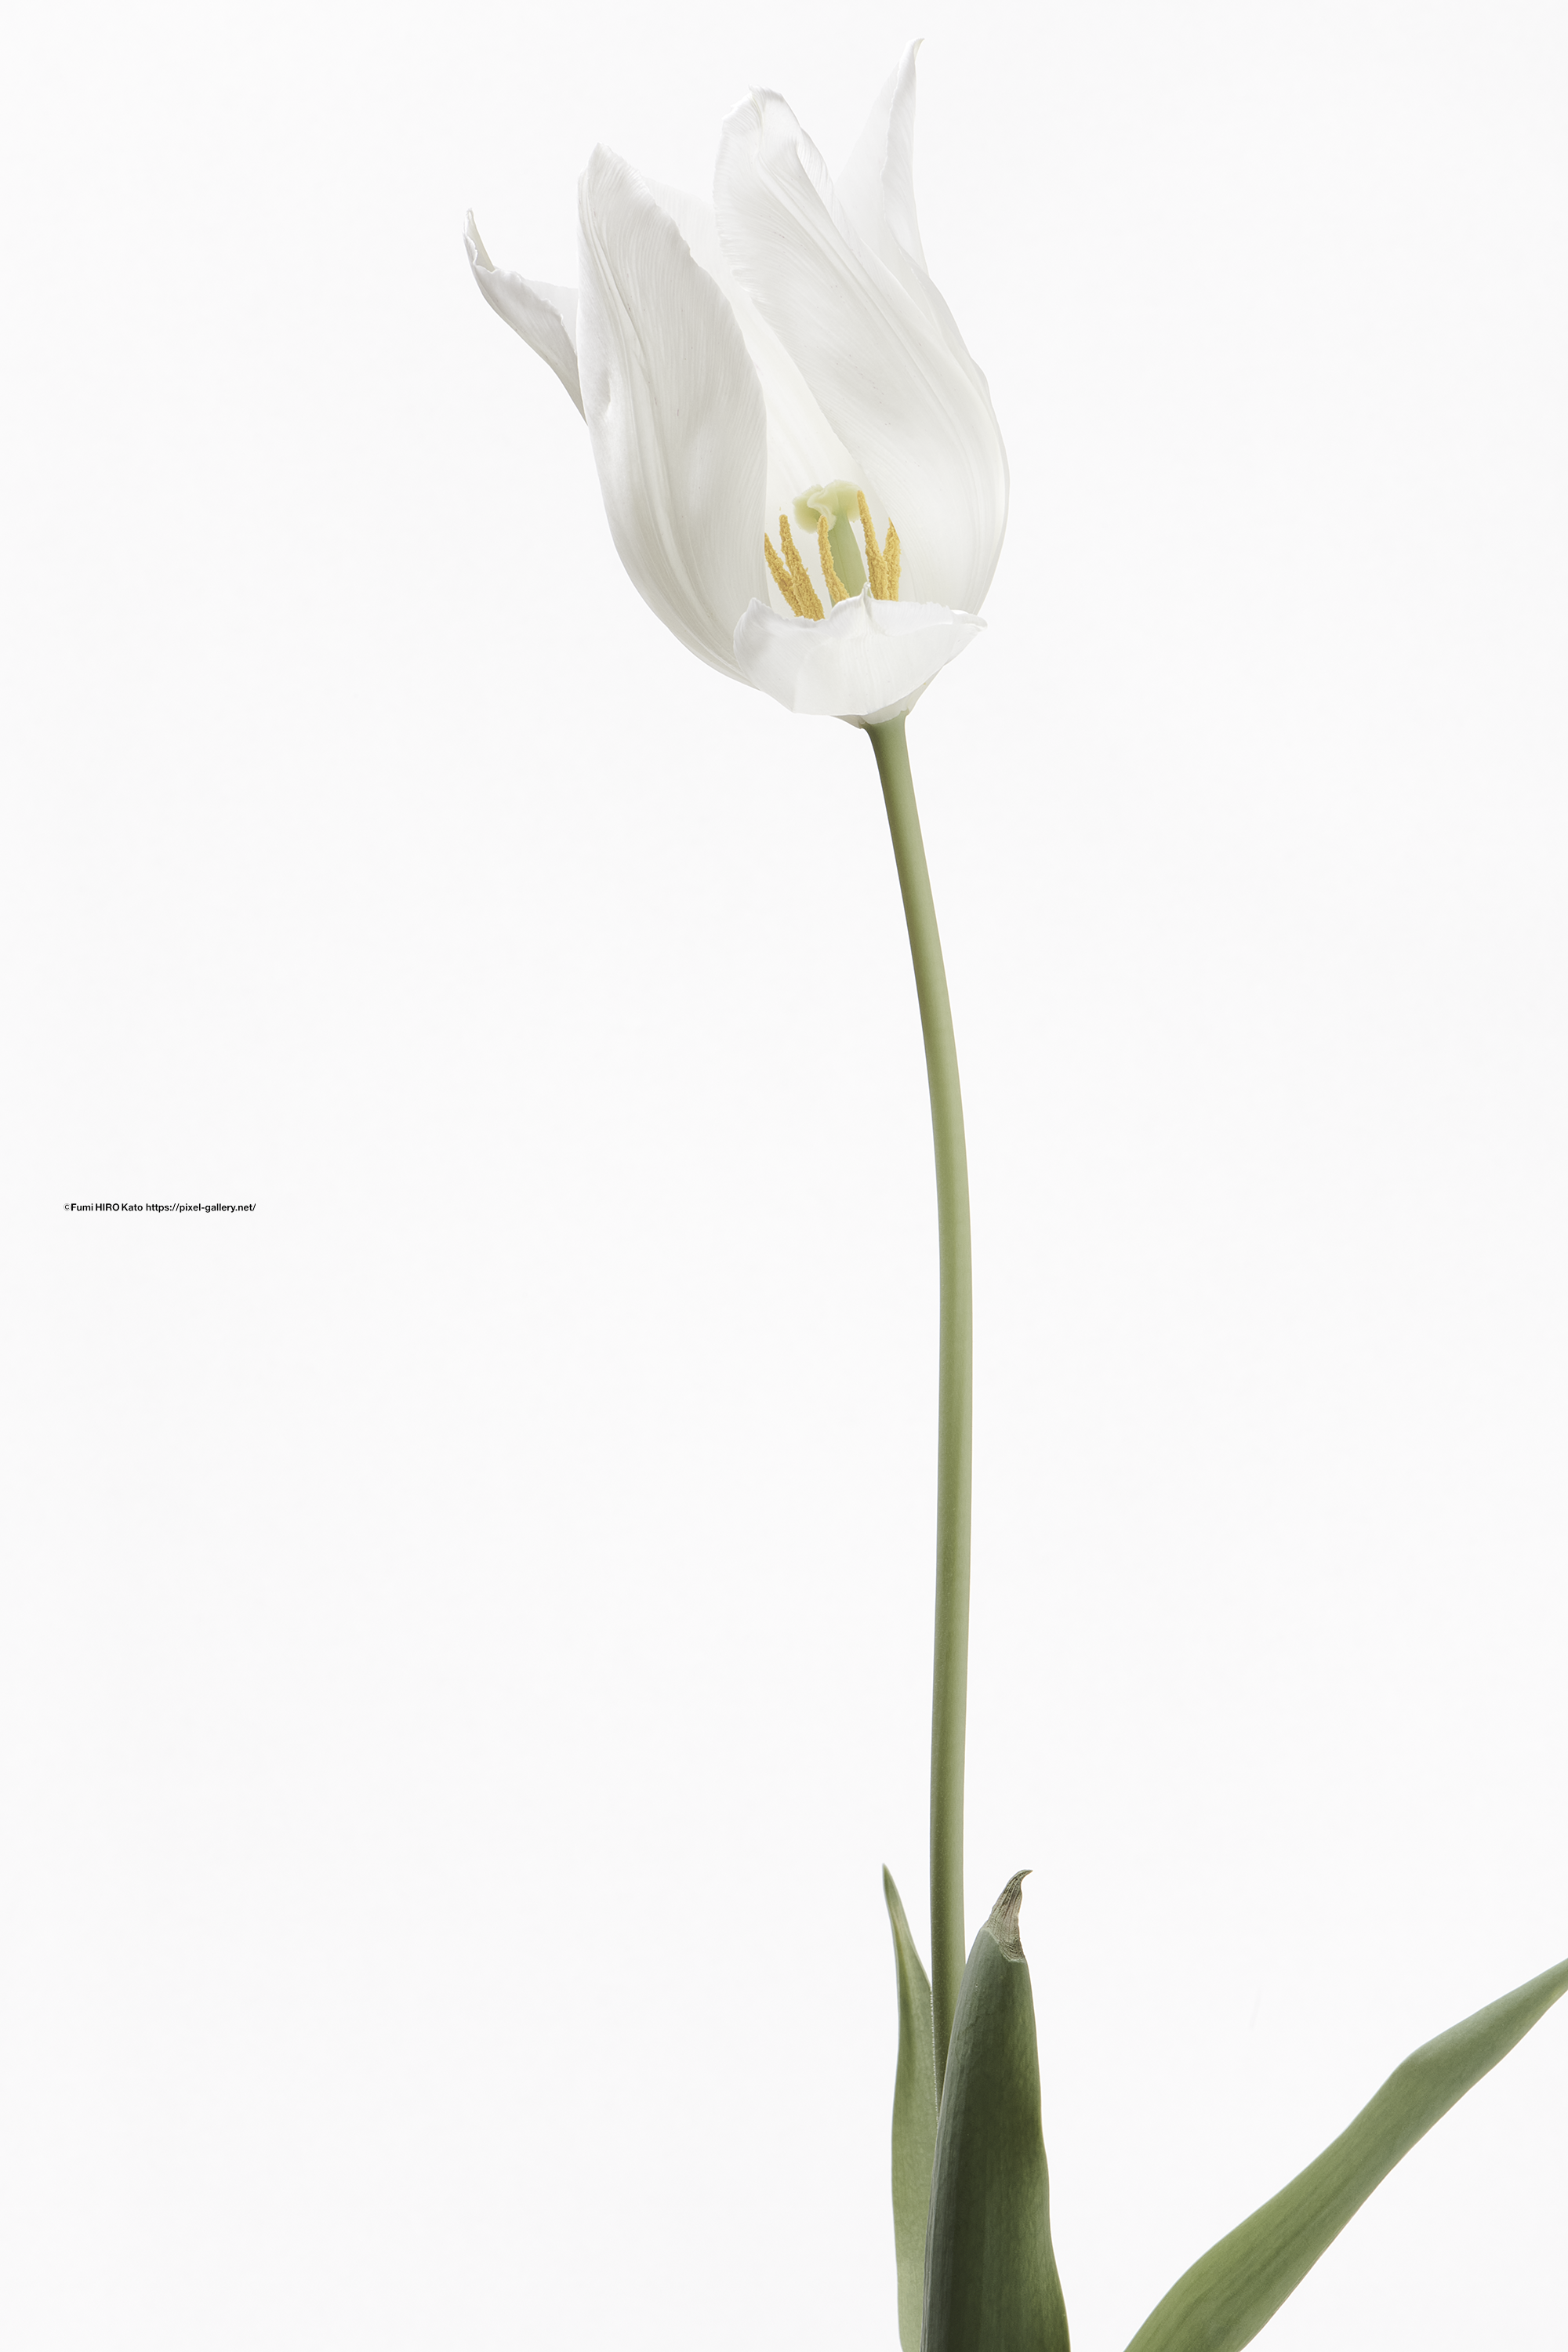 ハナ 2021-021 Tulip